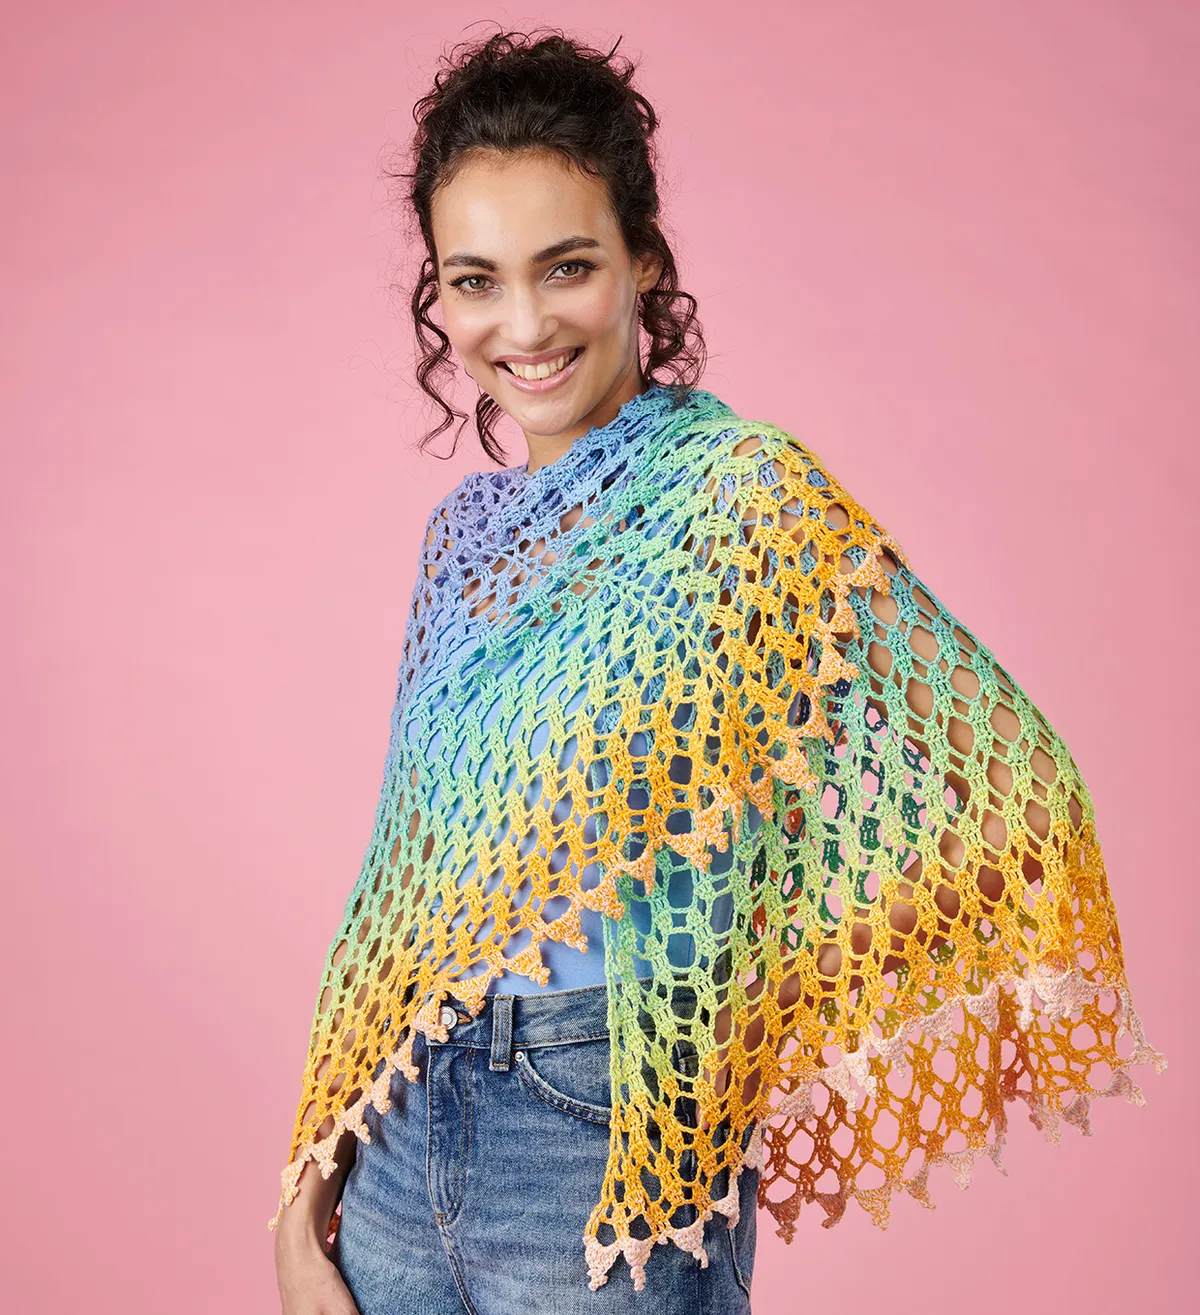 sunset shawl crochet pattern